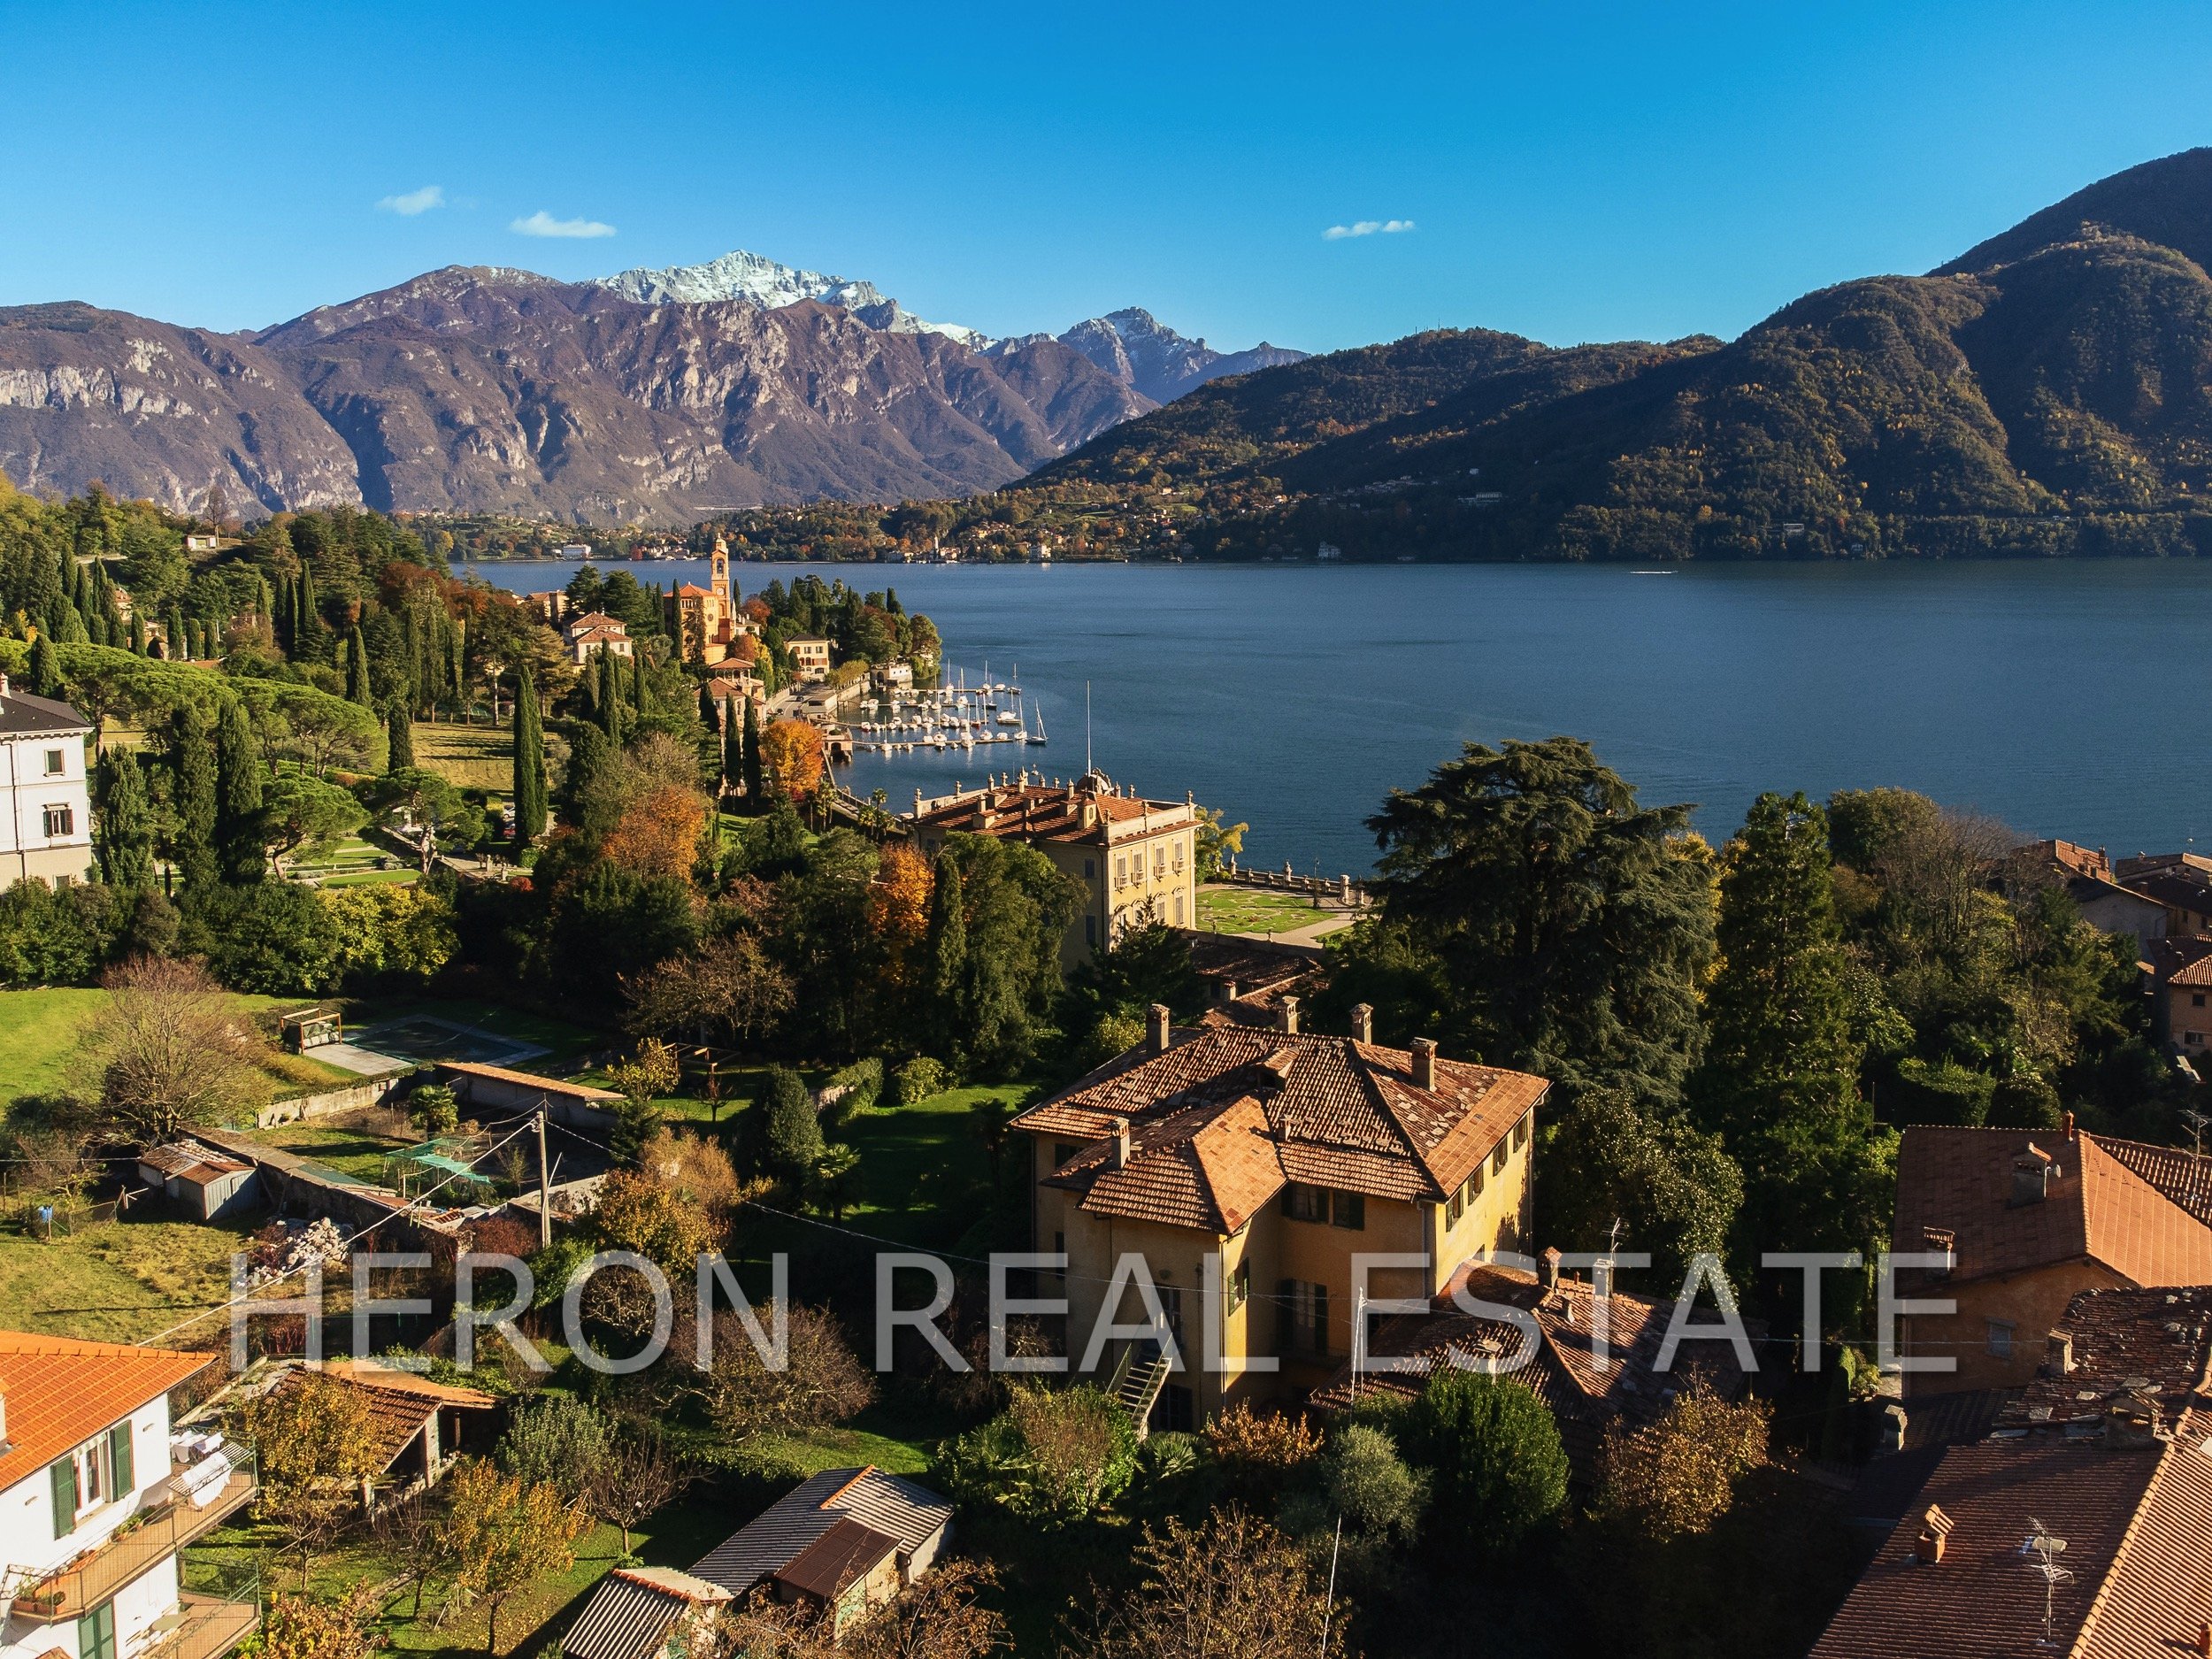 Villa tremezzo drone - AC Photo Studio (5 di 5).jpg